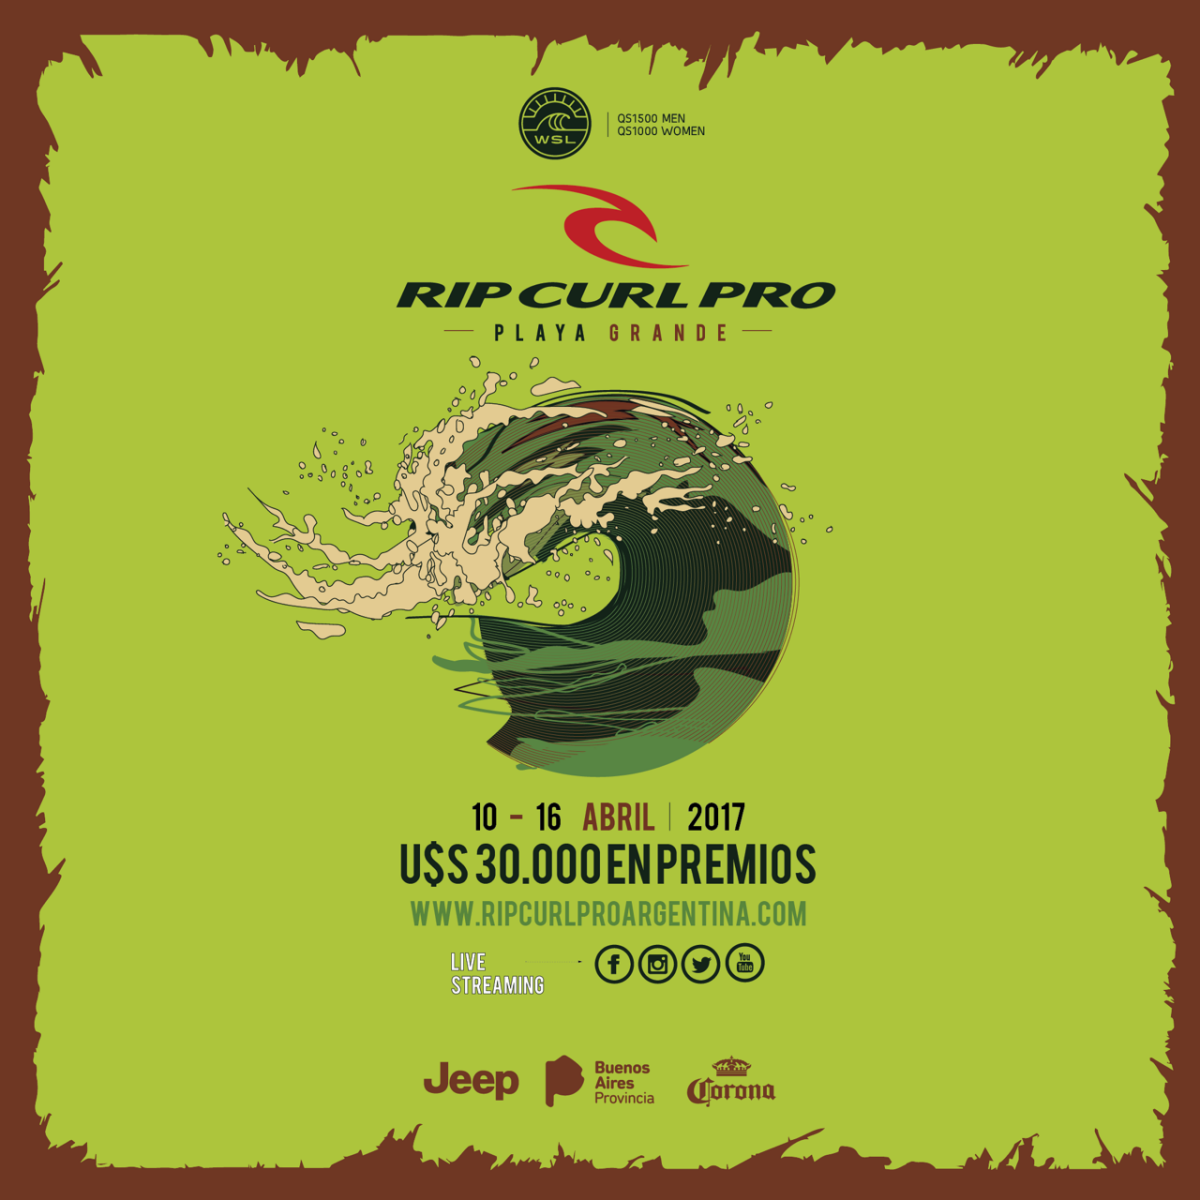 Rip Curl Pro Argentina - QS1000